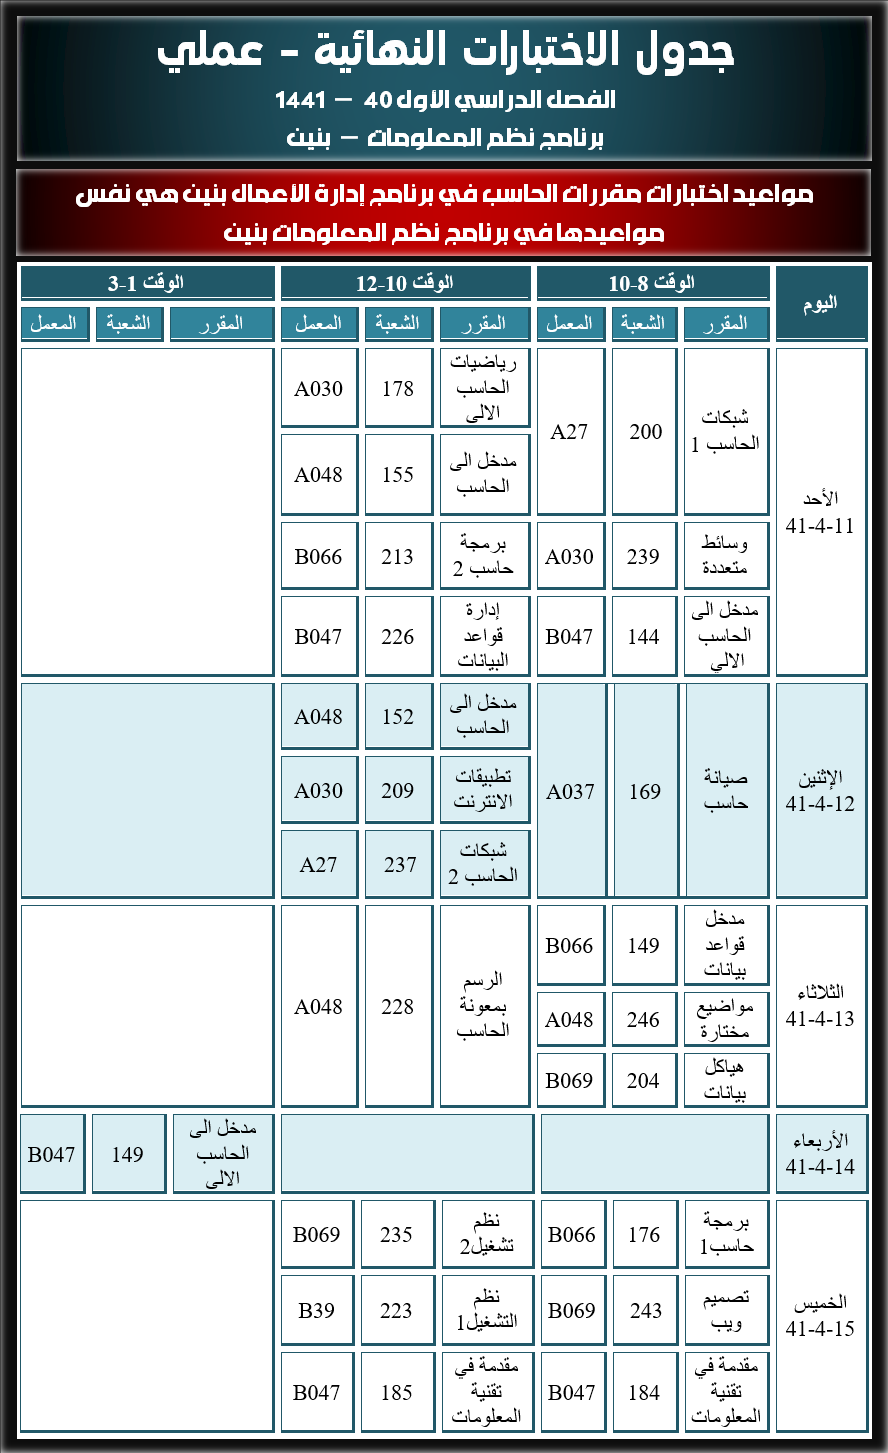 جدول الاختبارات النهائية عملي - نظم المعلومات - الخطة القديمة - الفصل الدراسي الأول - 40 - 1441 هـ